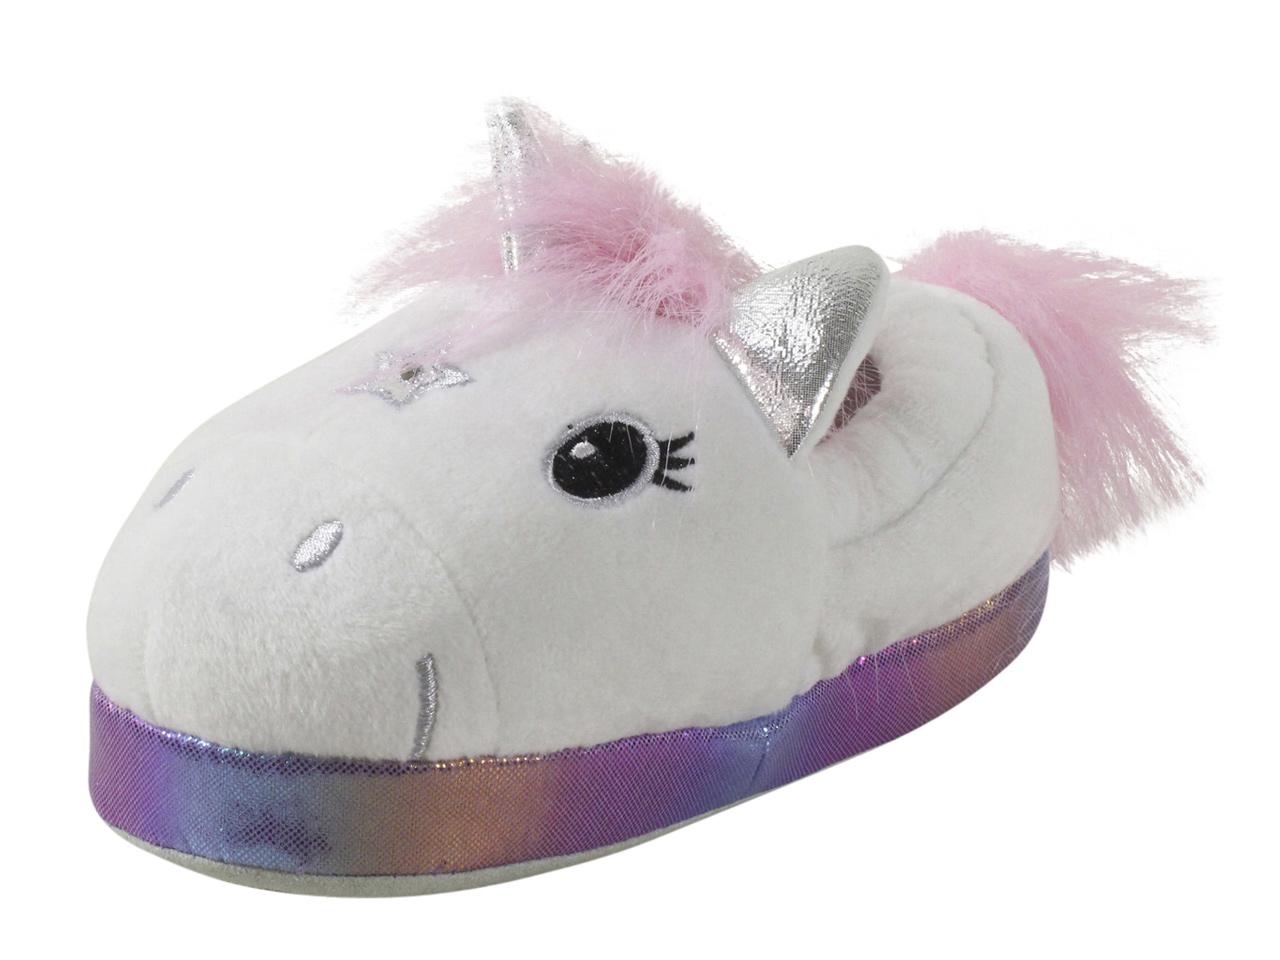 unicorn slippers for little girls